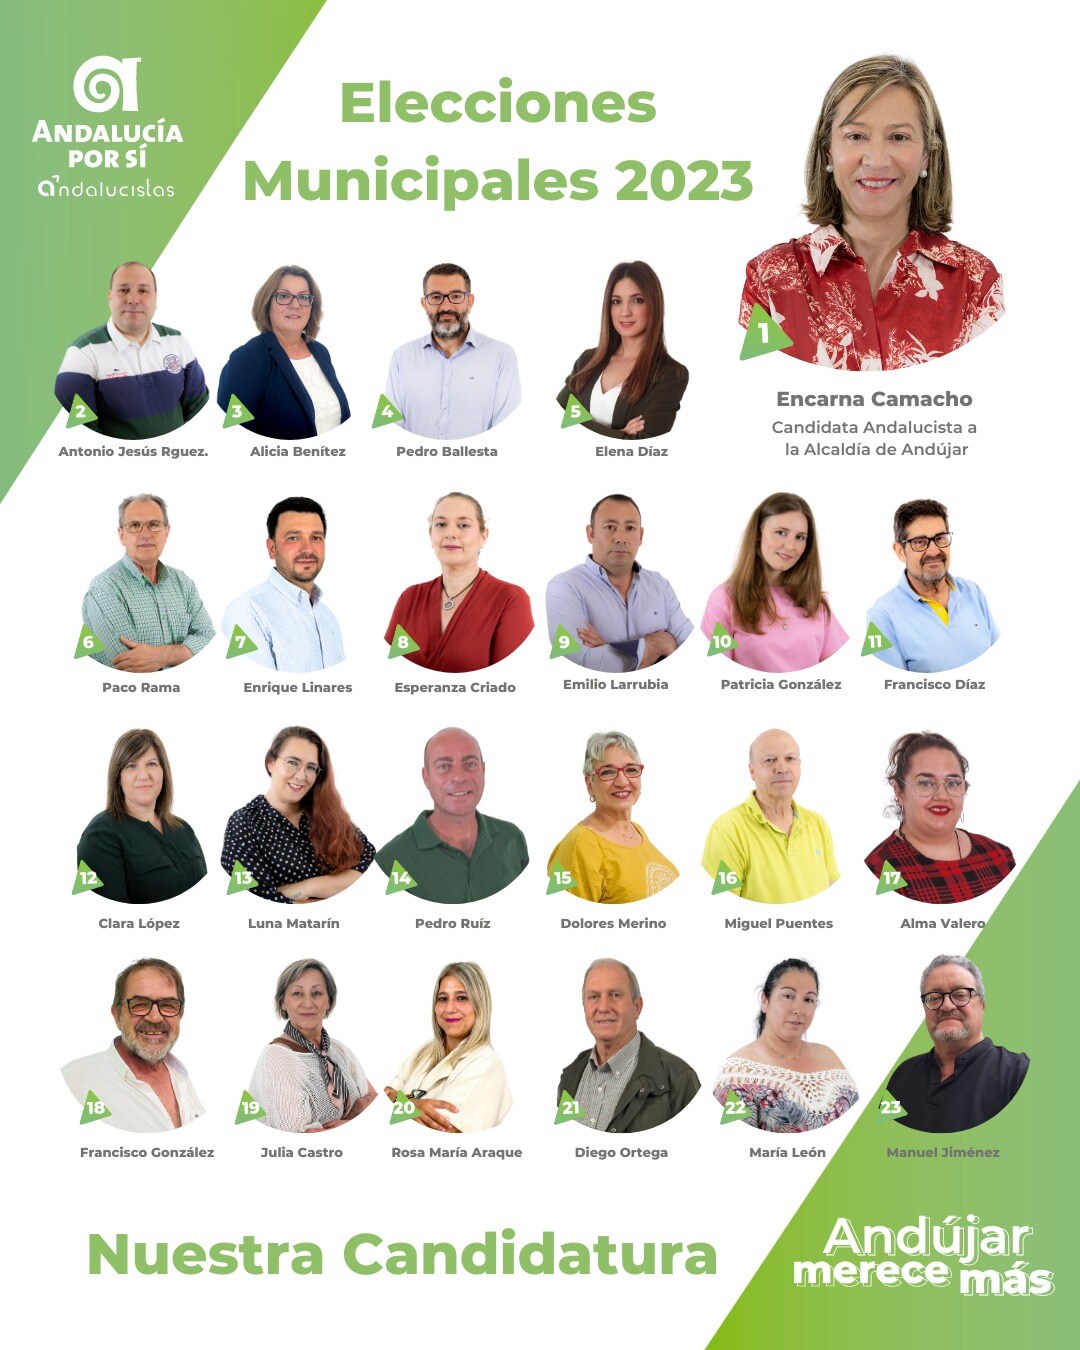 La candidatura de Andalucía Por Sí quiere colocar a la ciudad en el lugar que merece